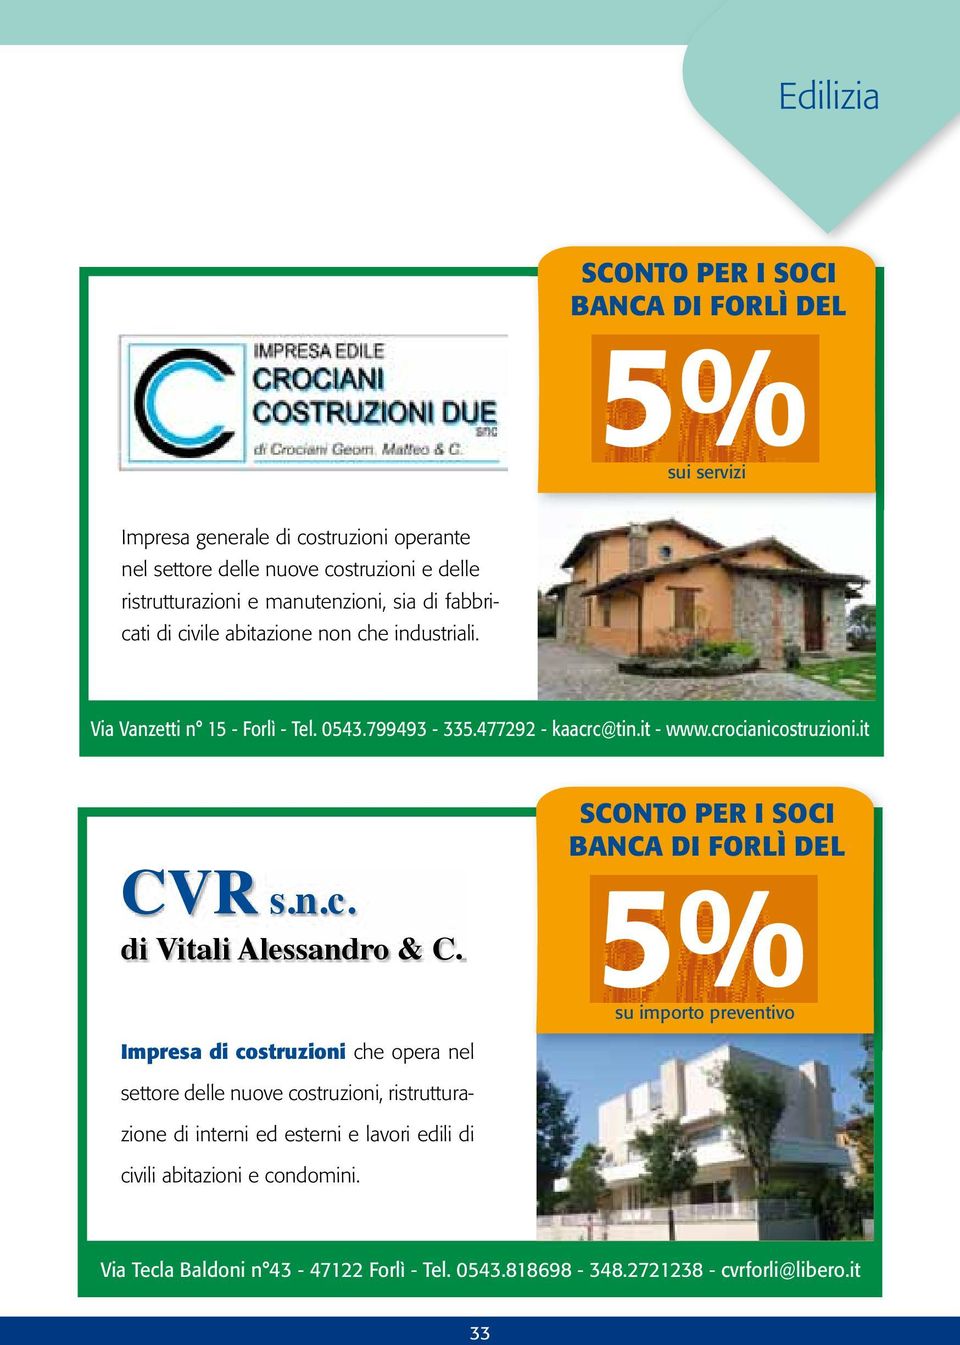 crocianicostruzioni.it CVR s.n.c. di Vitali Alessandro & C.